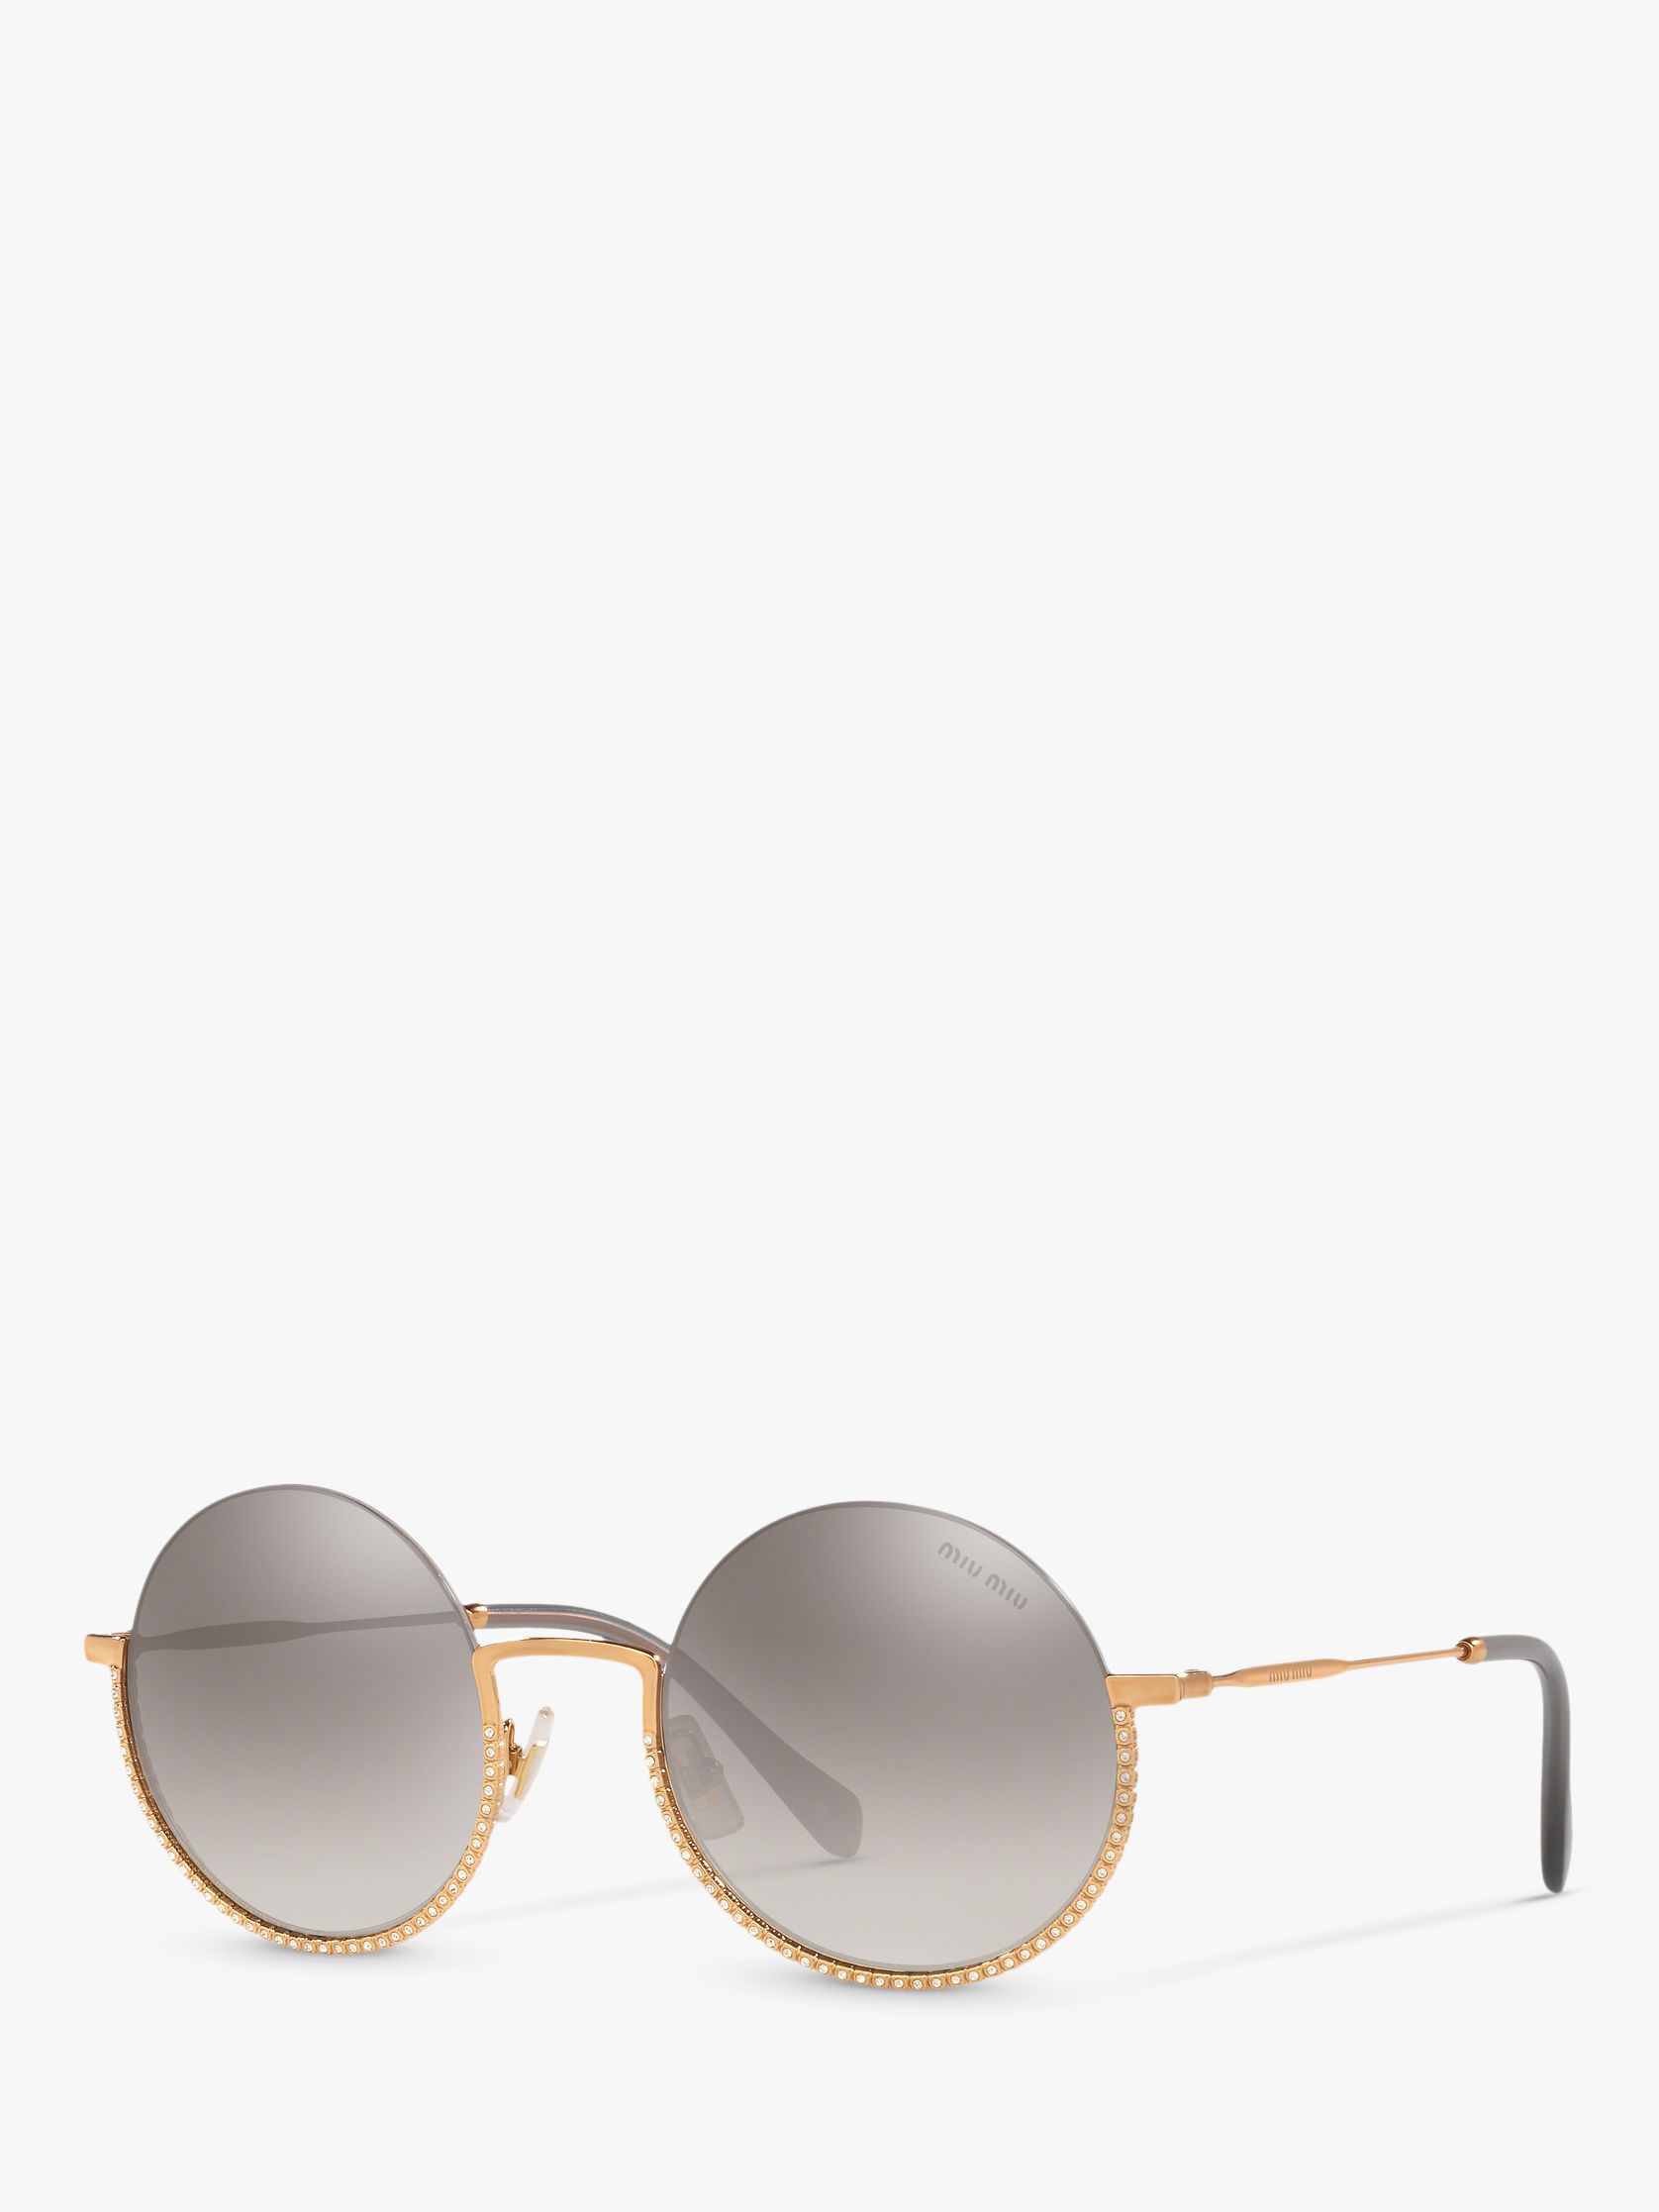 MU 69US Женские круглые солнцезащитные очки с украшением Miu Miu, золотой/серый